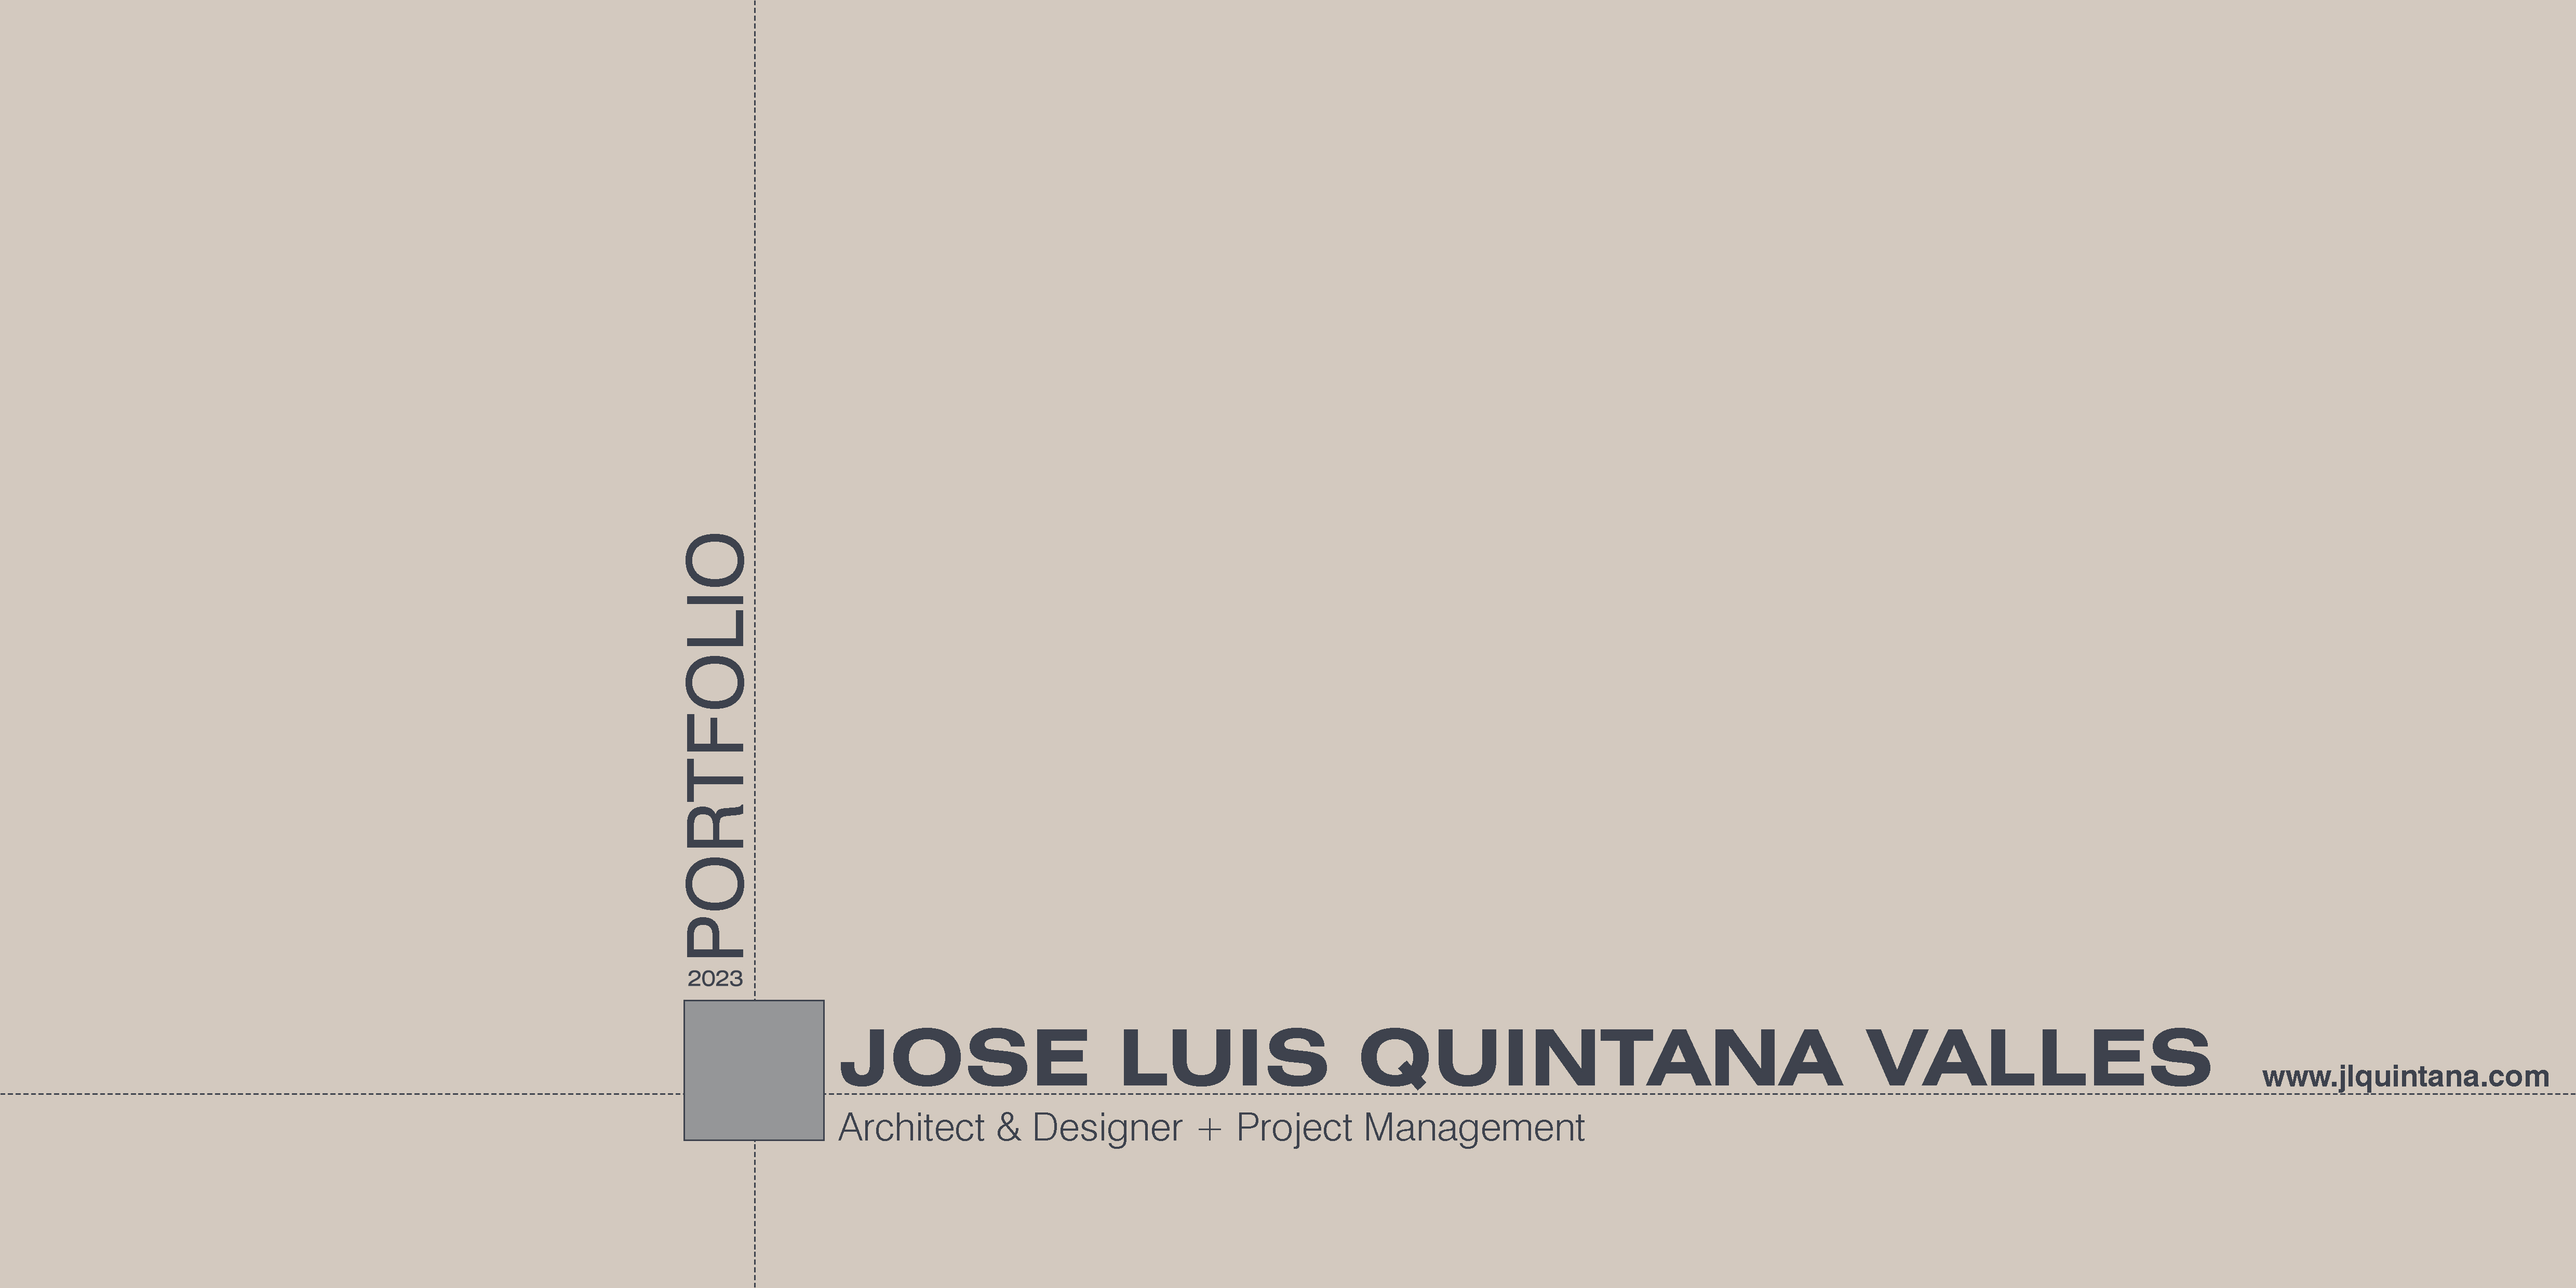 2023 |

I _ | JOSE LUIS QUINTANA VALLES .vosumnen

Architect &amp; Designer + Project Management